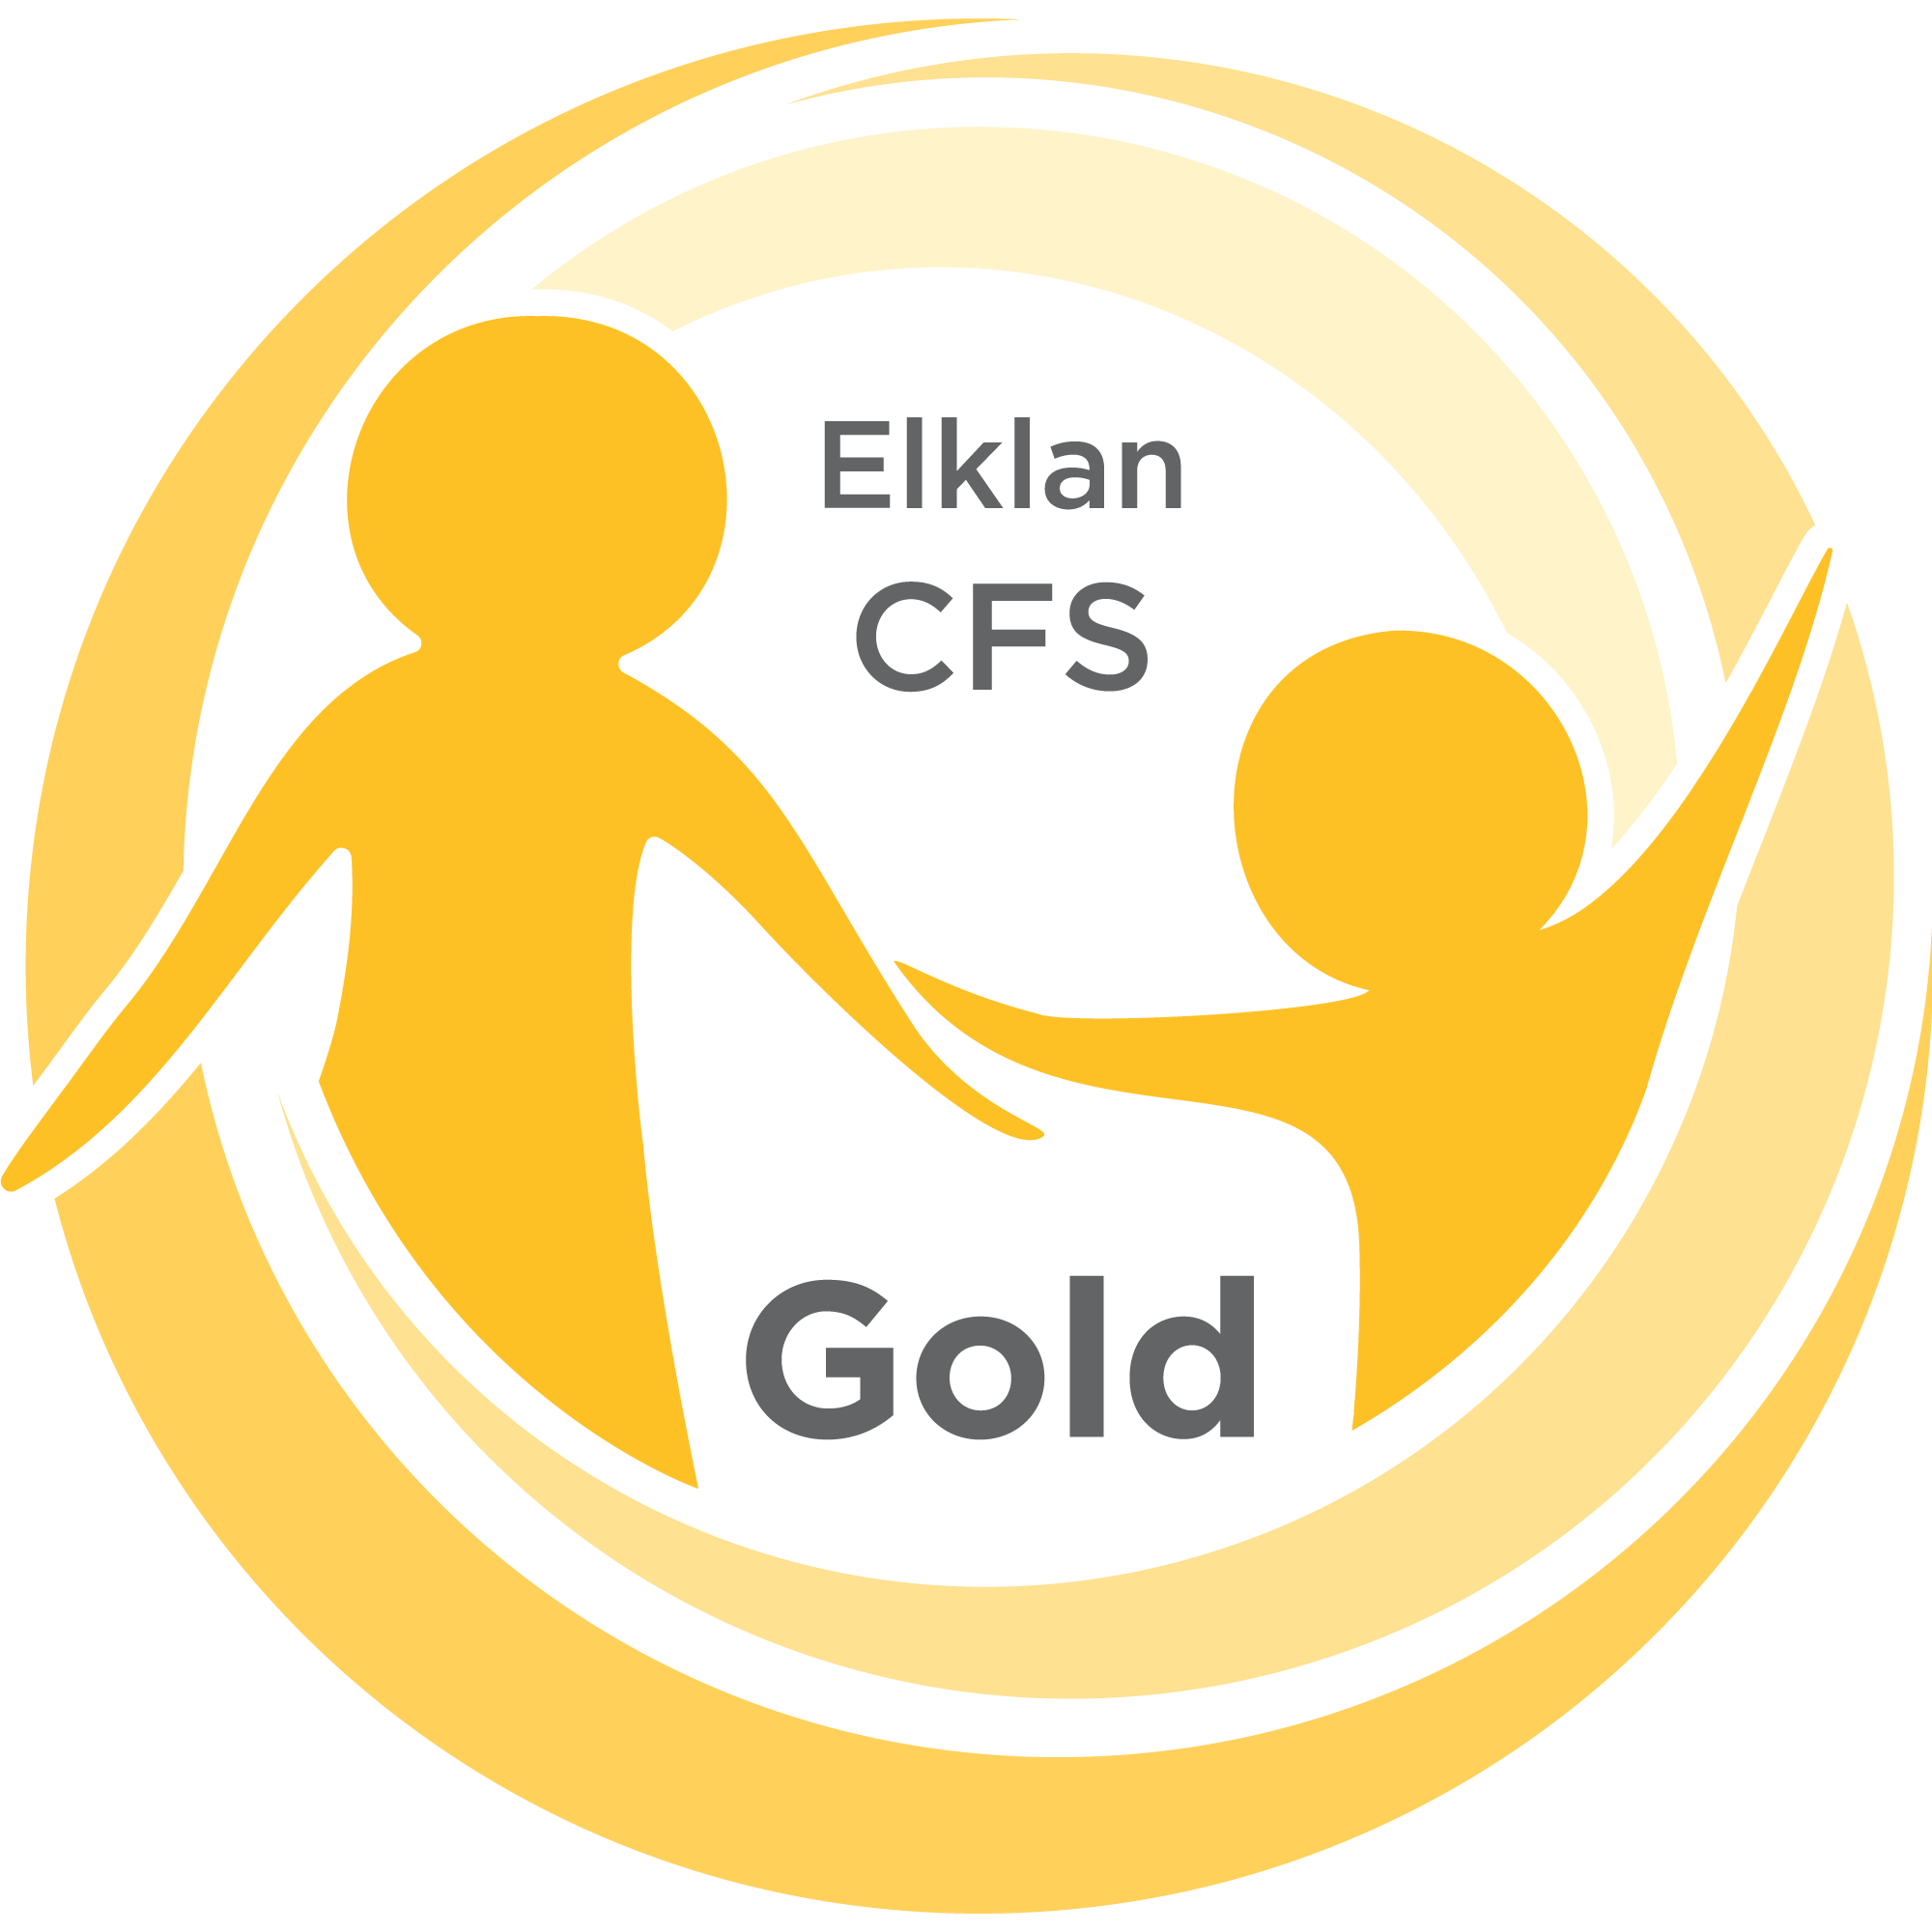 Elklan CFS Gold